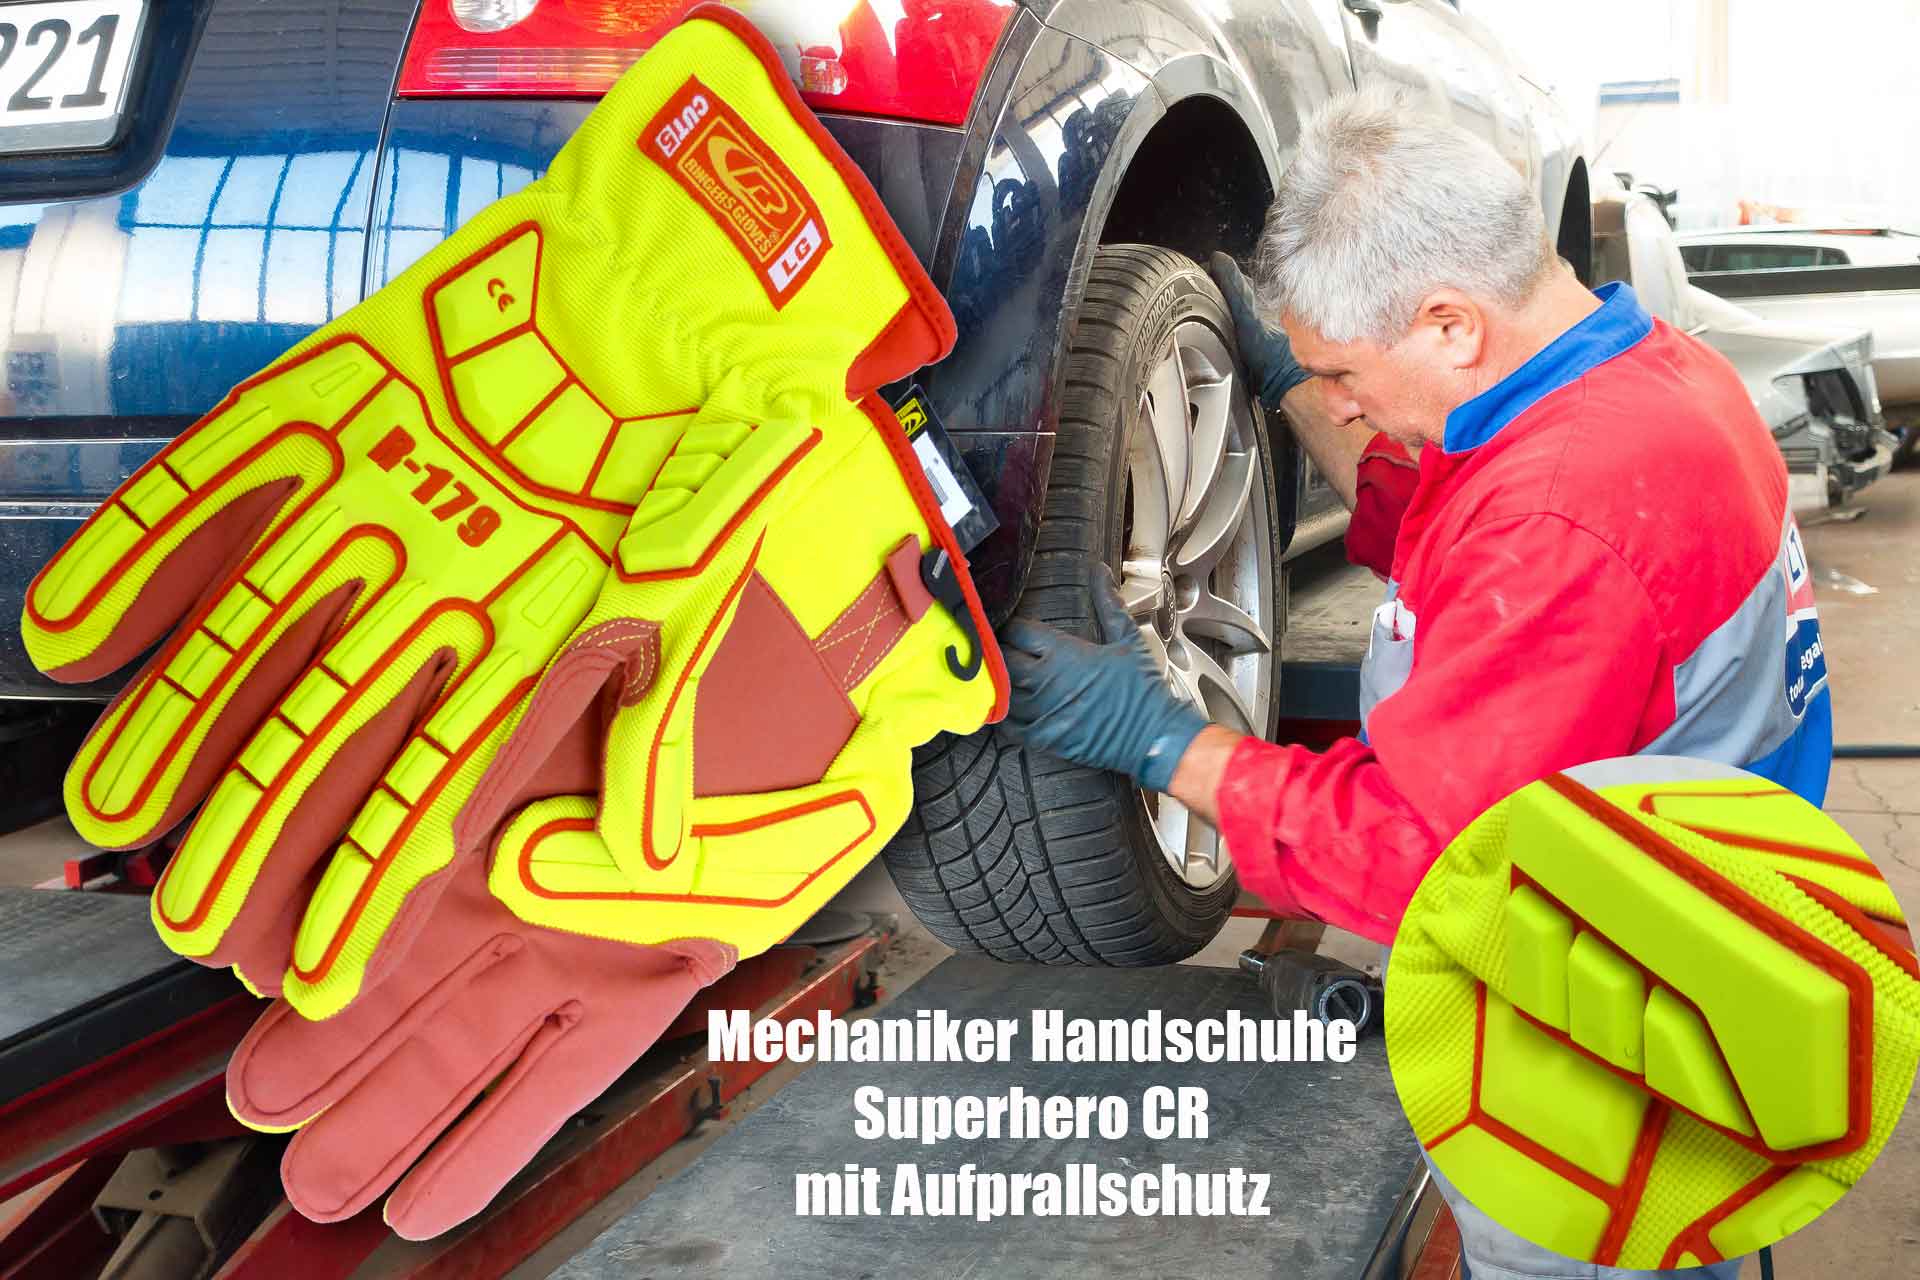 Mechaniker-Handschuhe schnittfest, Aufprallschutz, Stoßschutz von Ringers-Gloves R-179, Kategorie 5 F3 Technologie Motocross geeignet